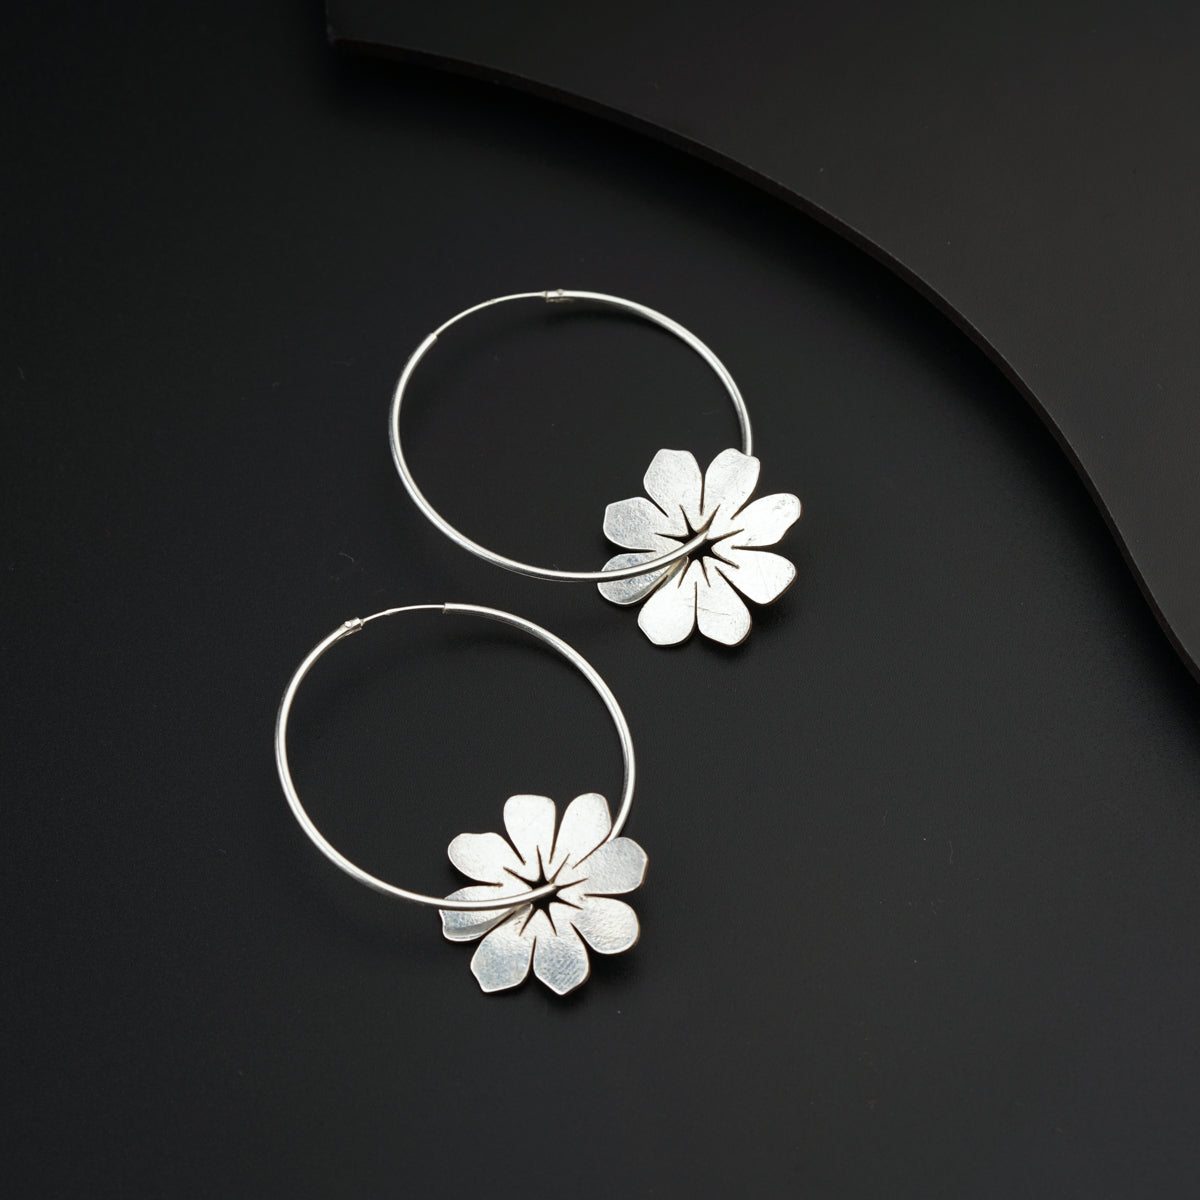 a pair of flower hoop earrings on a black surface